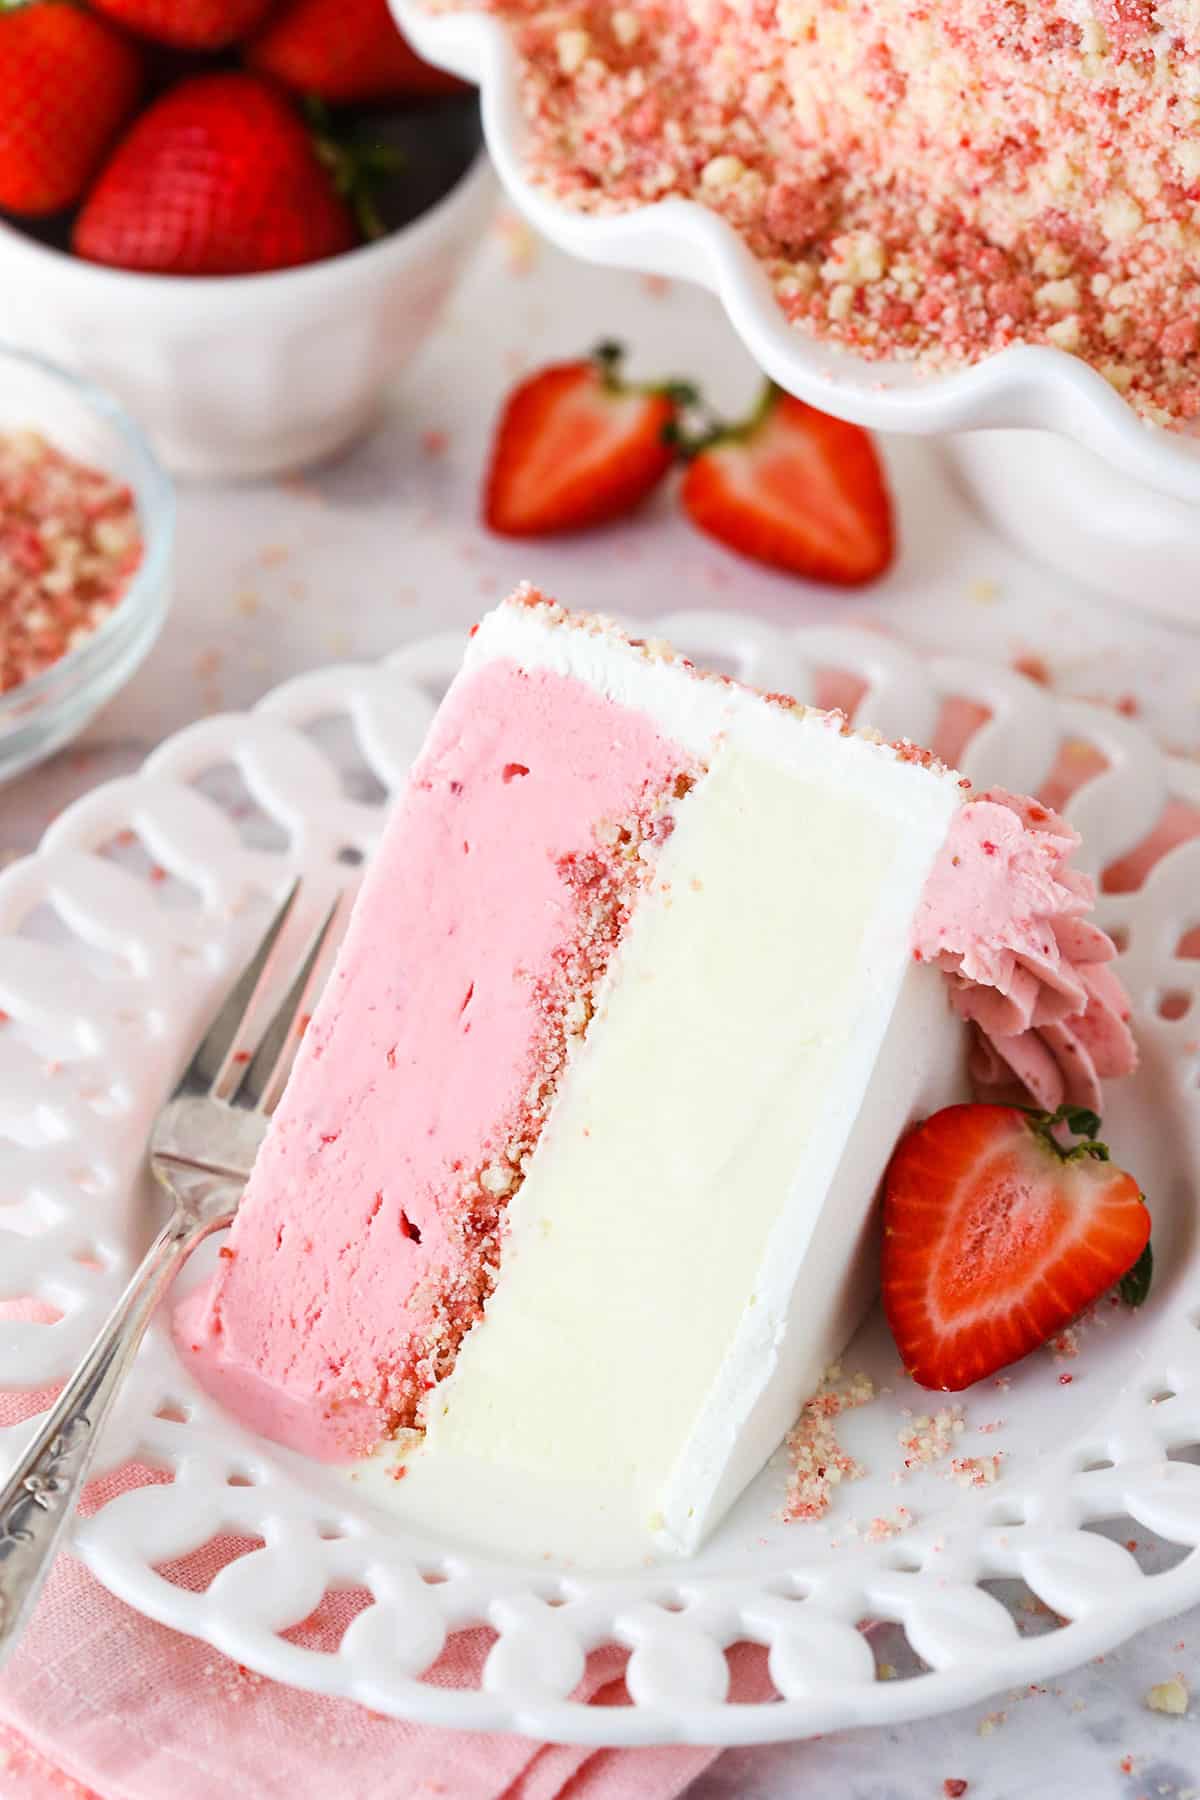 strawberries and vanilla ice cream